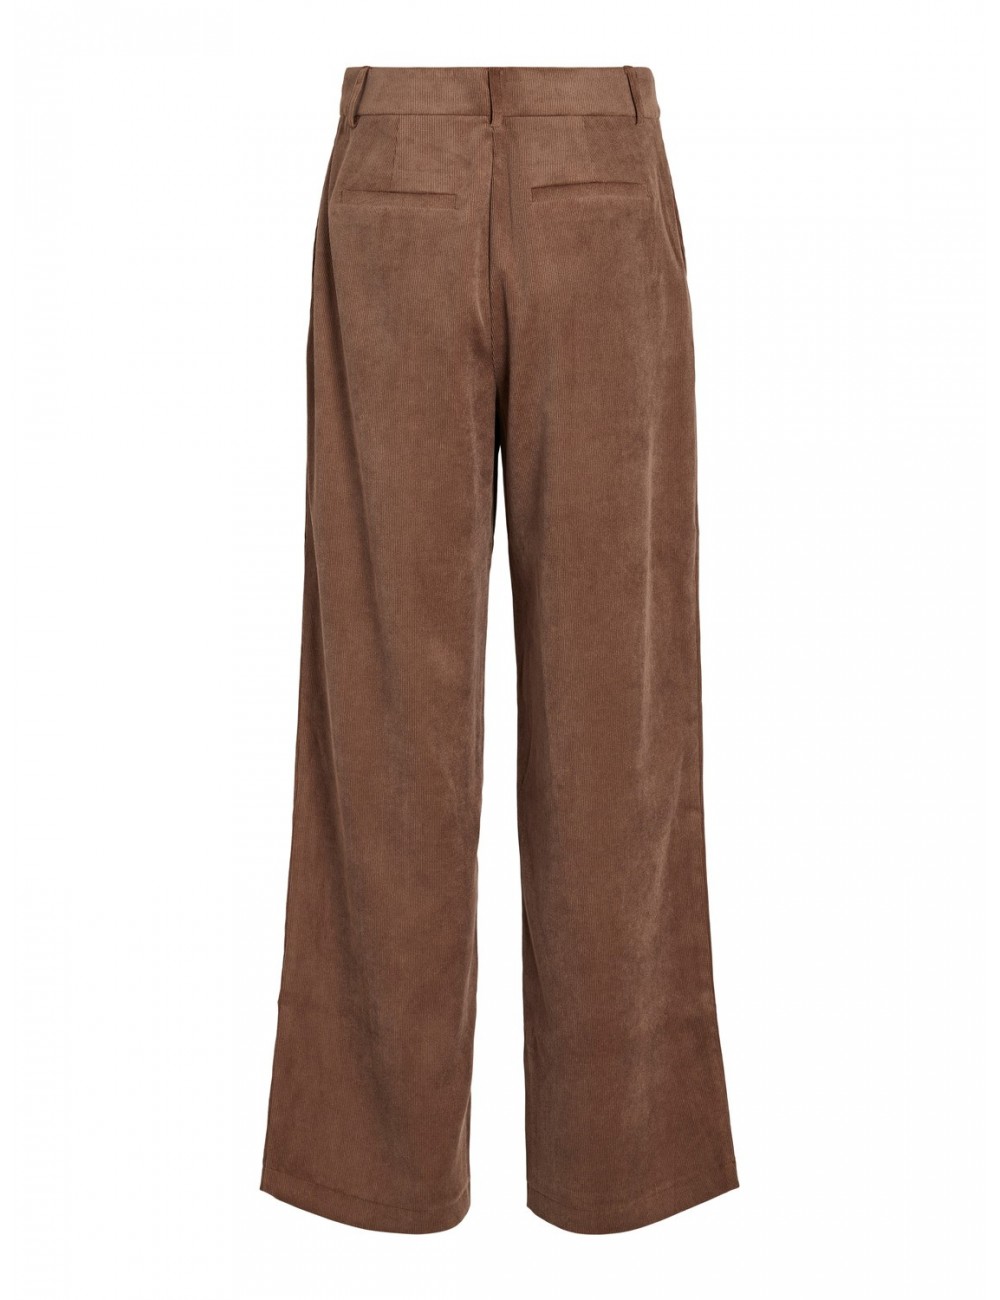 Pantalón Courdie de acabado en micro pana color marrón. Marca Vila.